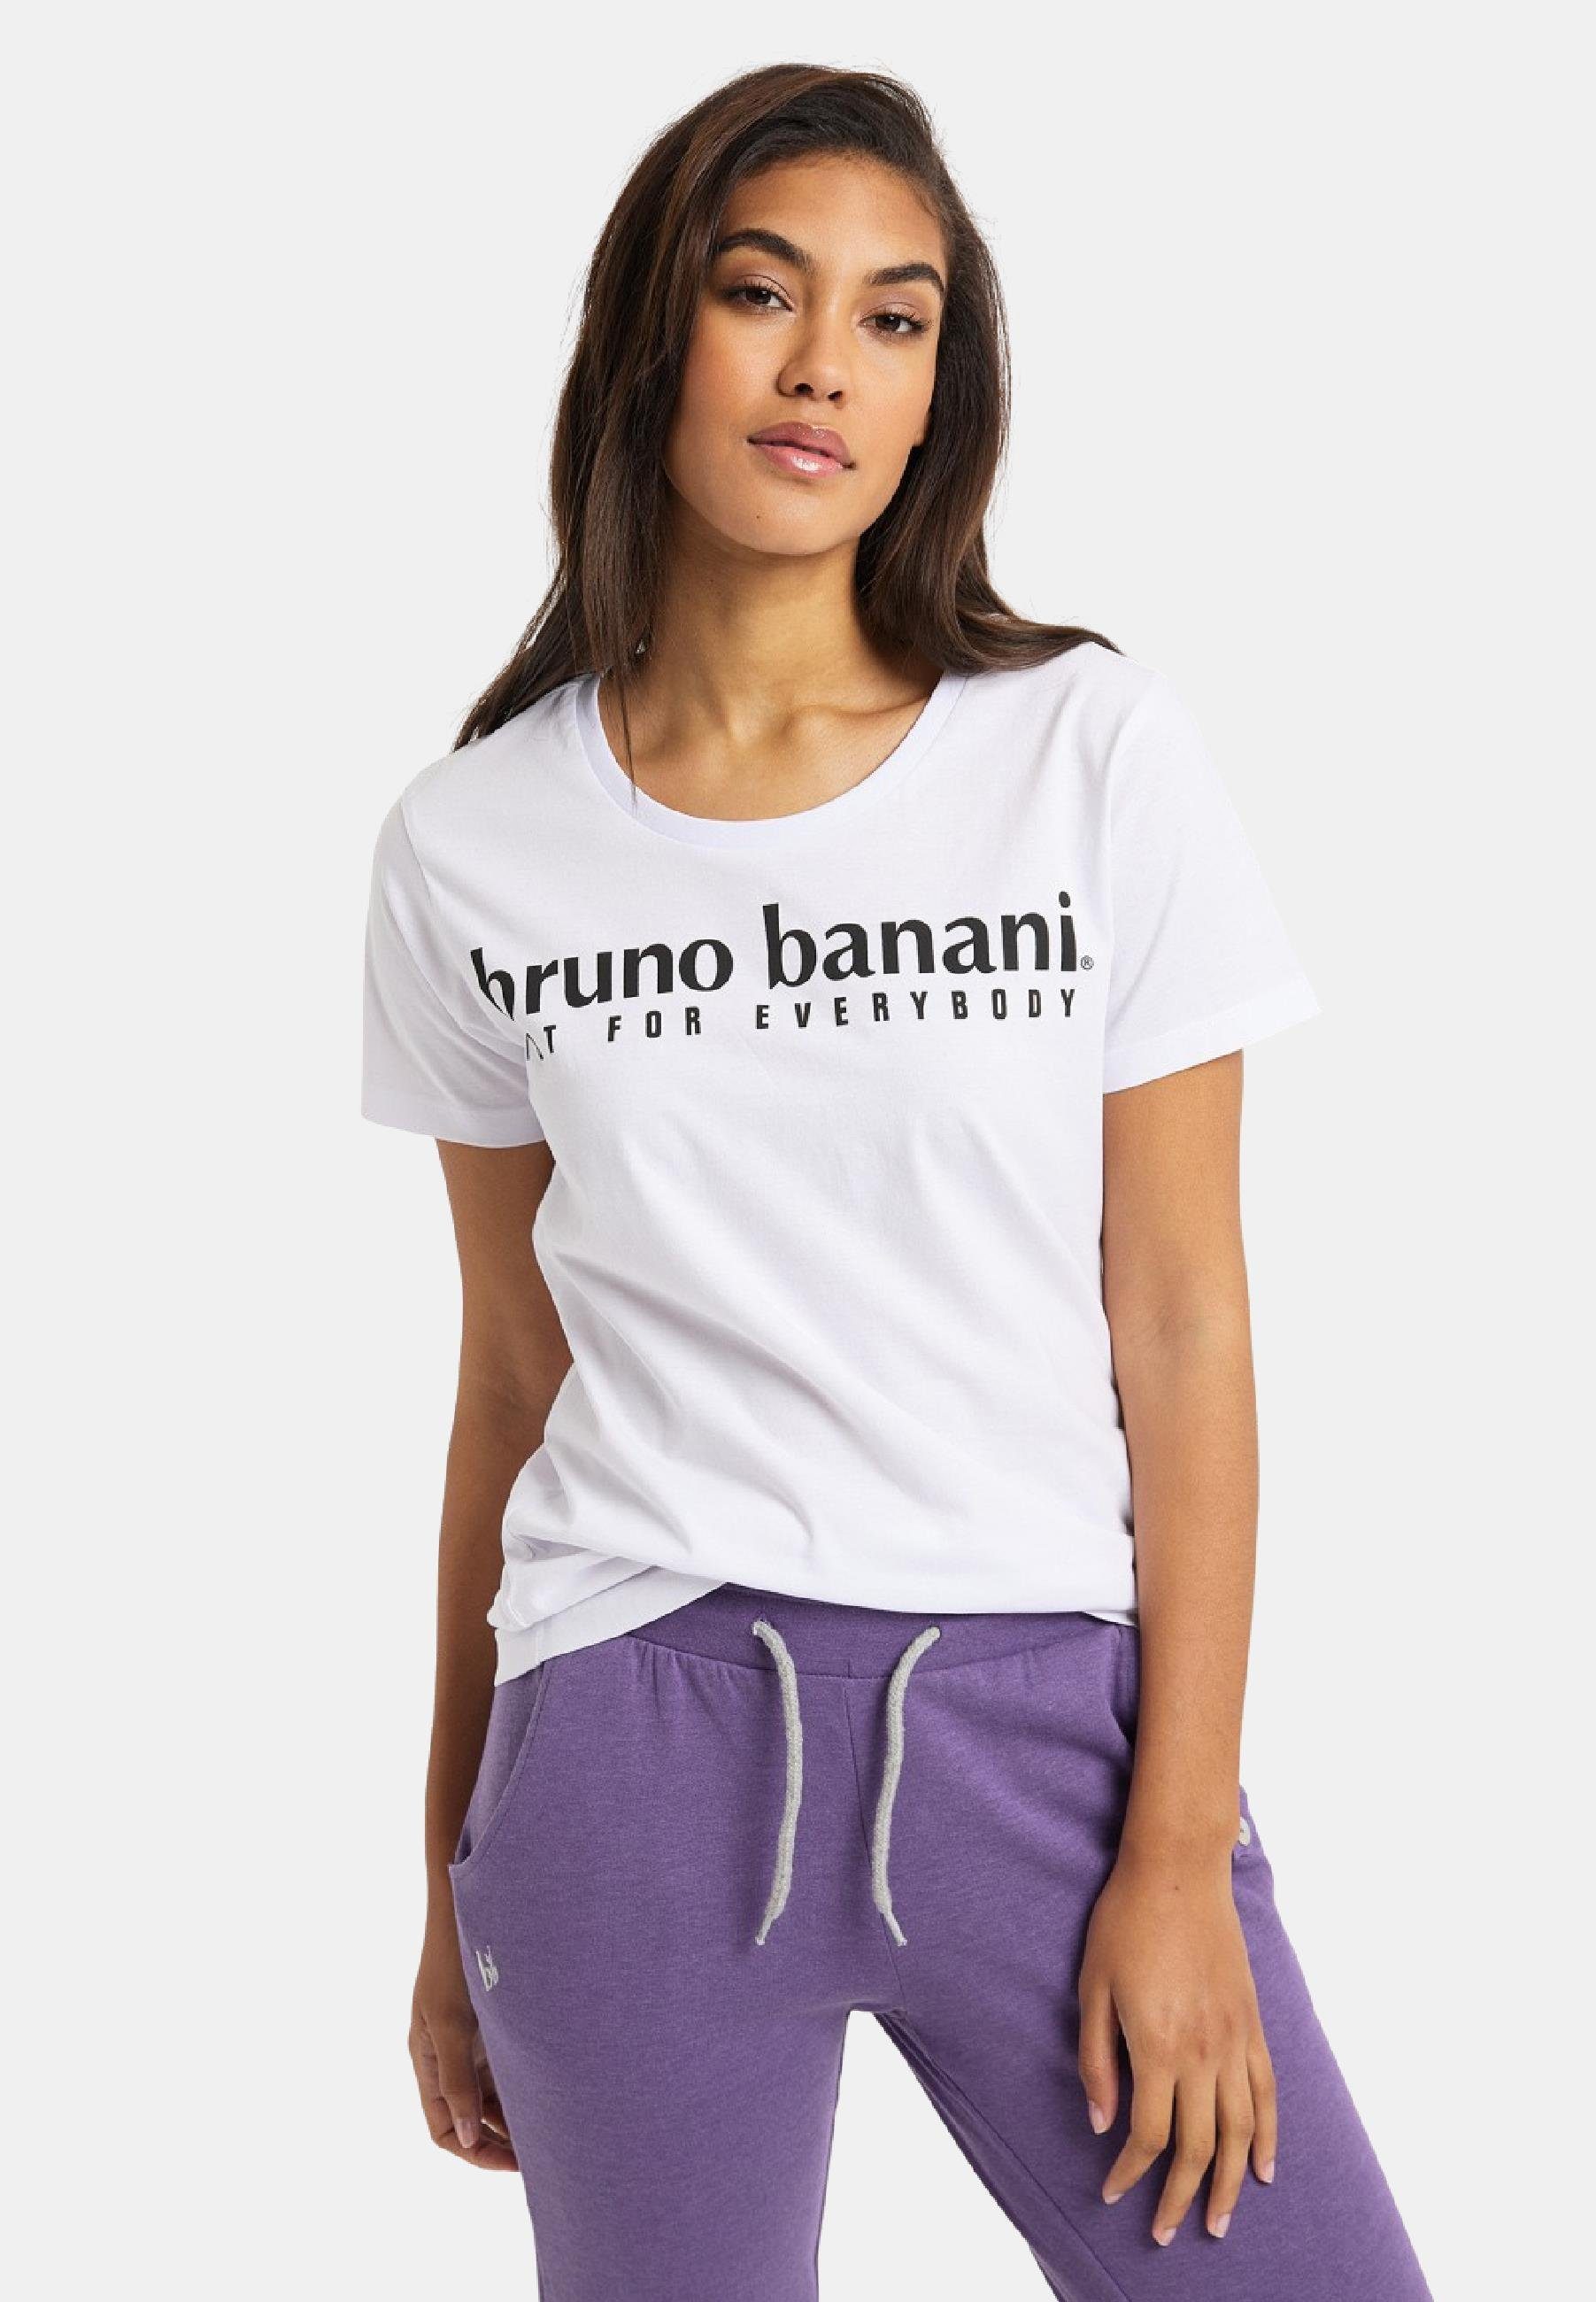 Bruno Banani Damen Shirts online kaufen | OTTO